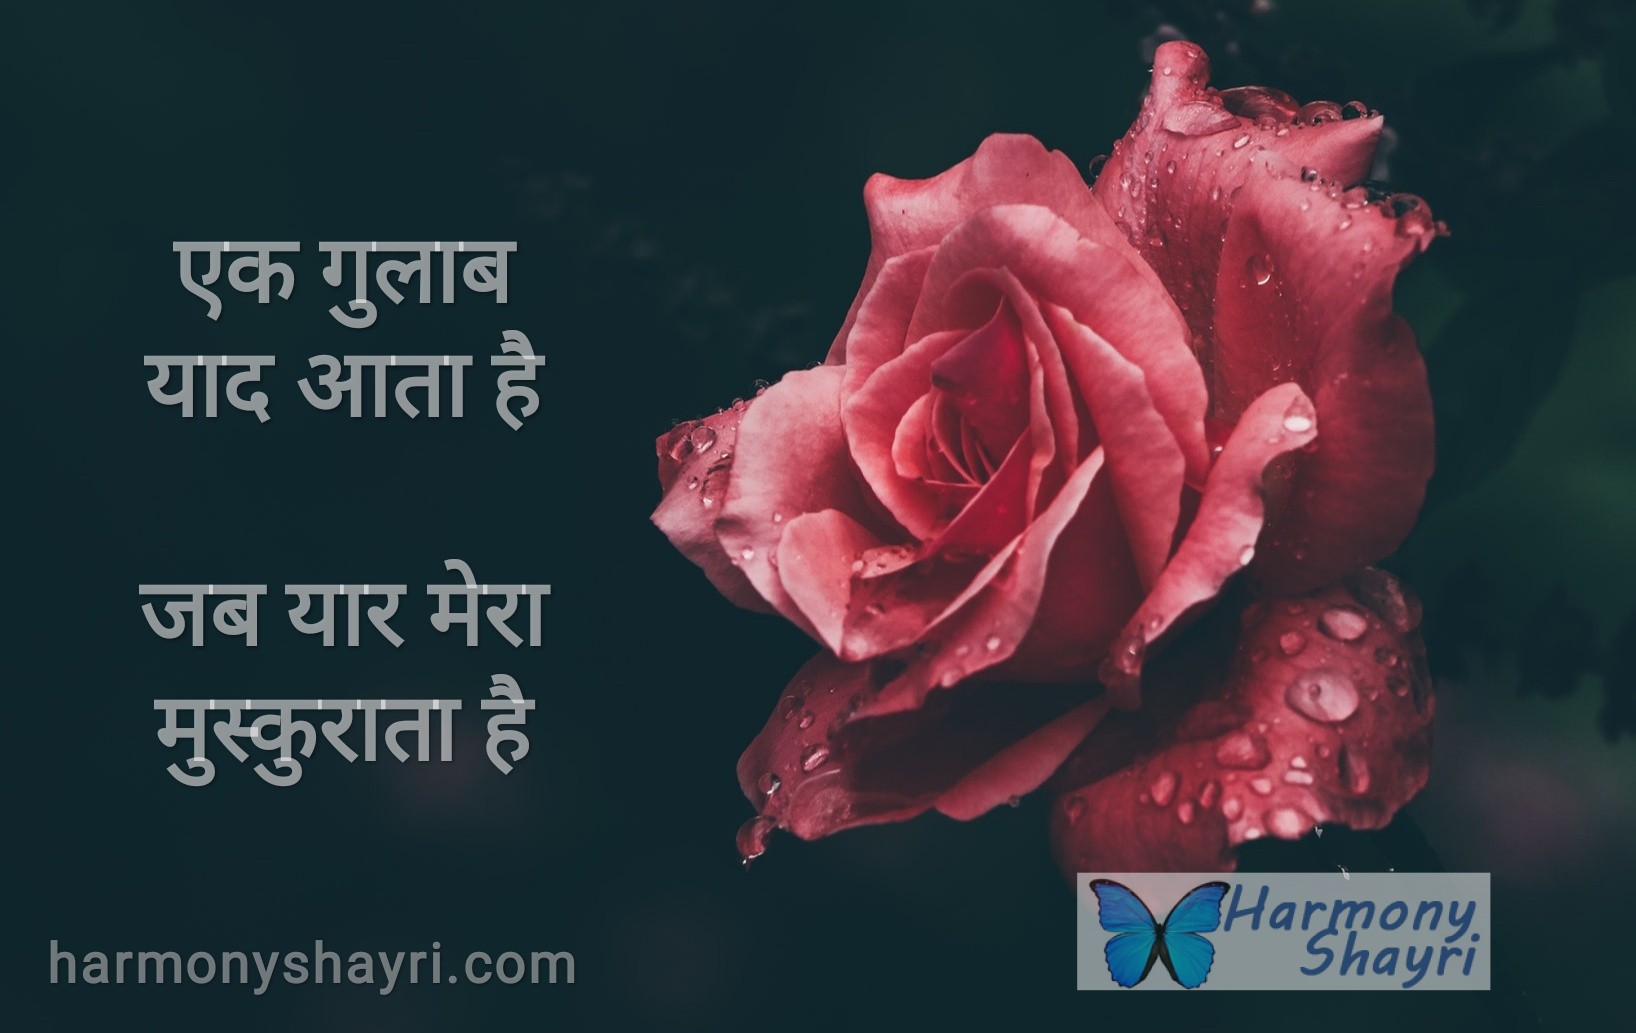 Ek gulab yaad aata hai – Happy Rose Day